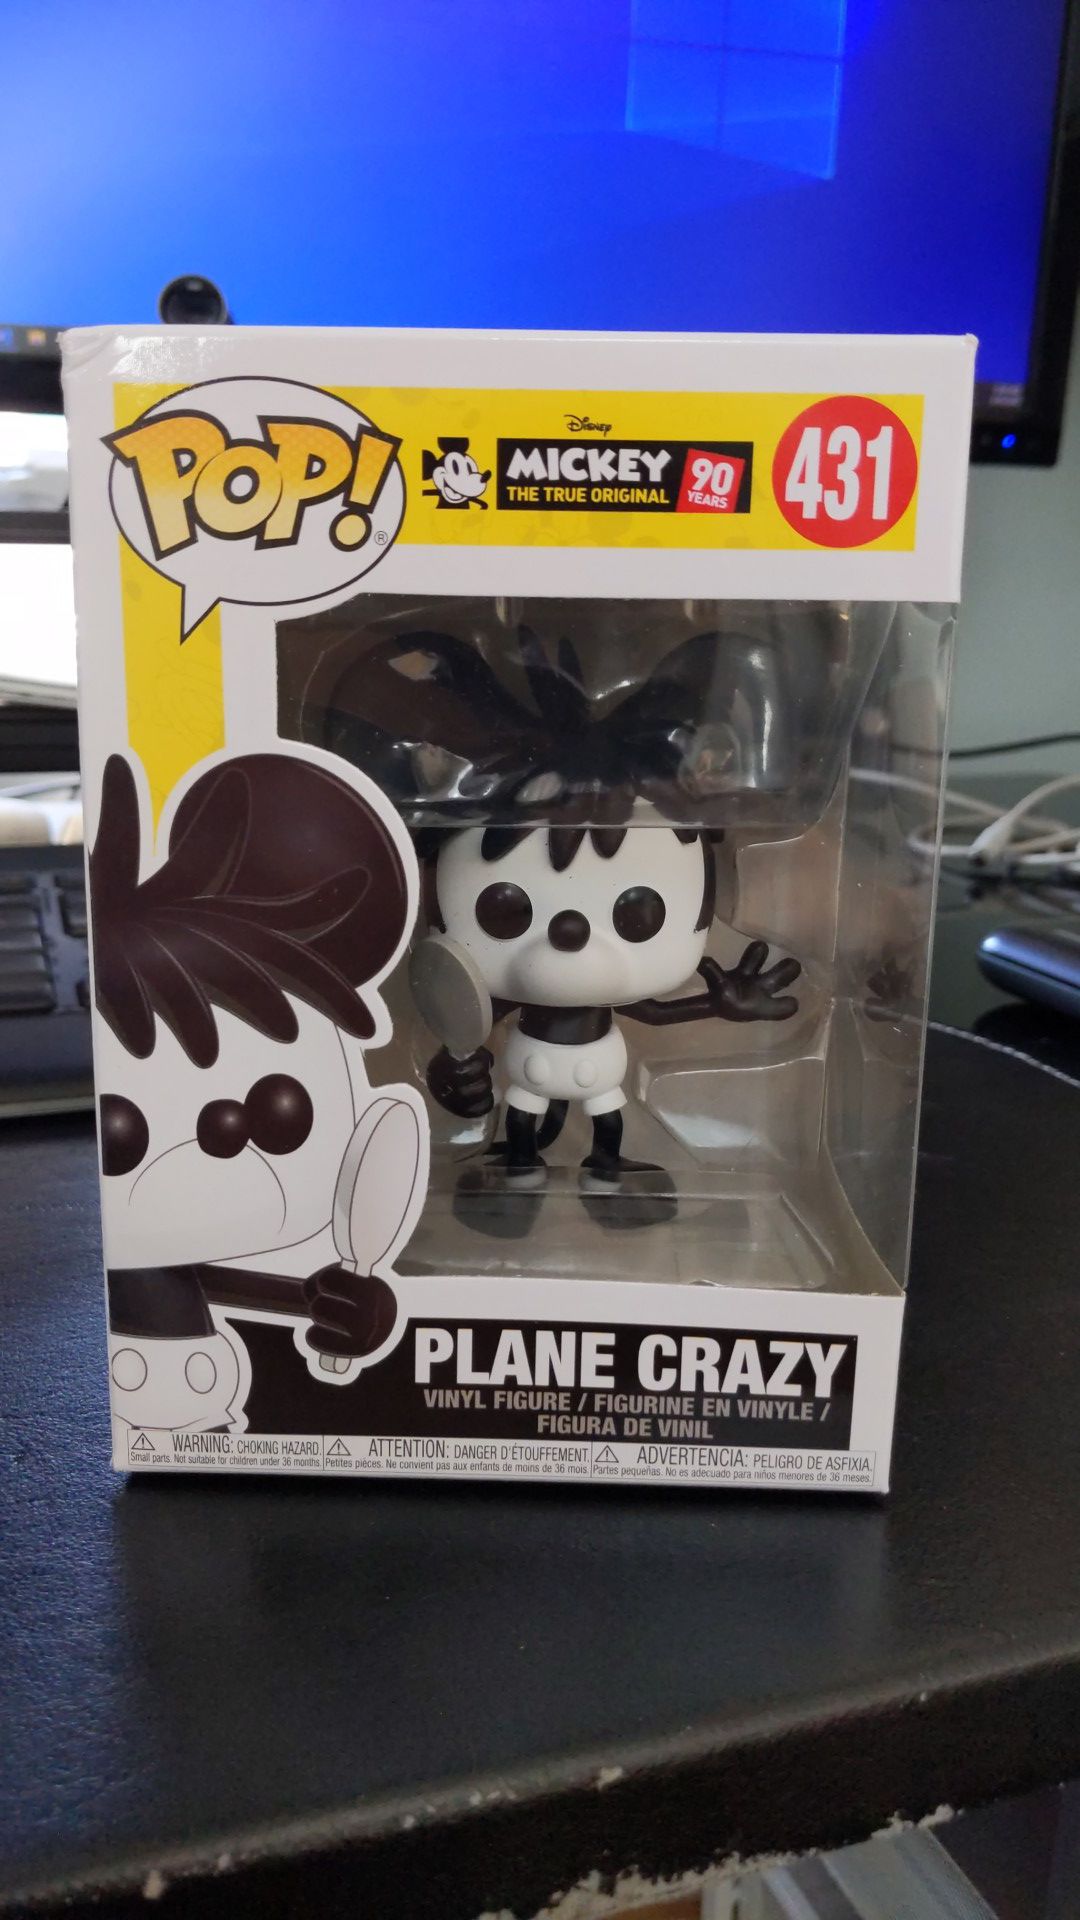 Funko Pop! Disney Mickey the True Original Plane Crazy #431